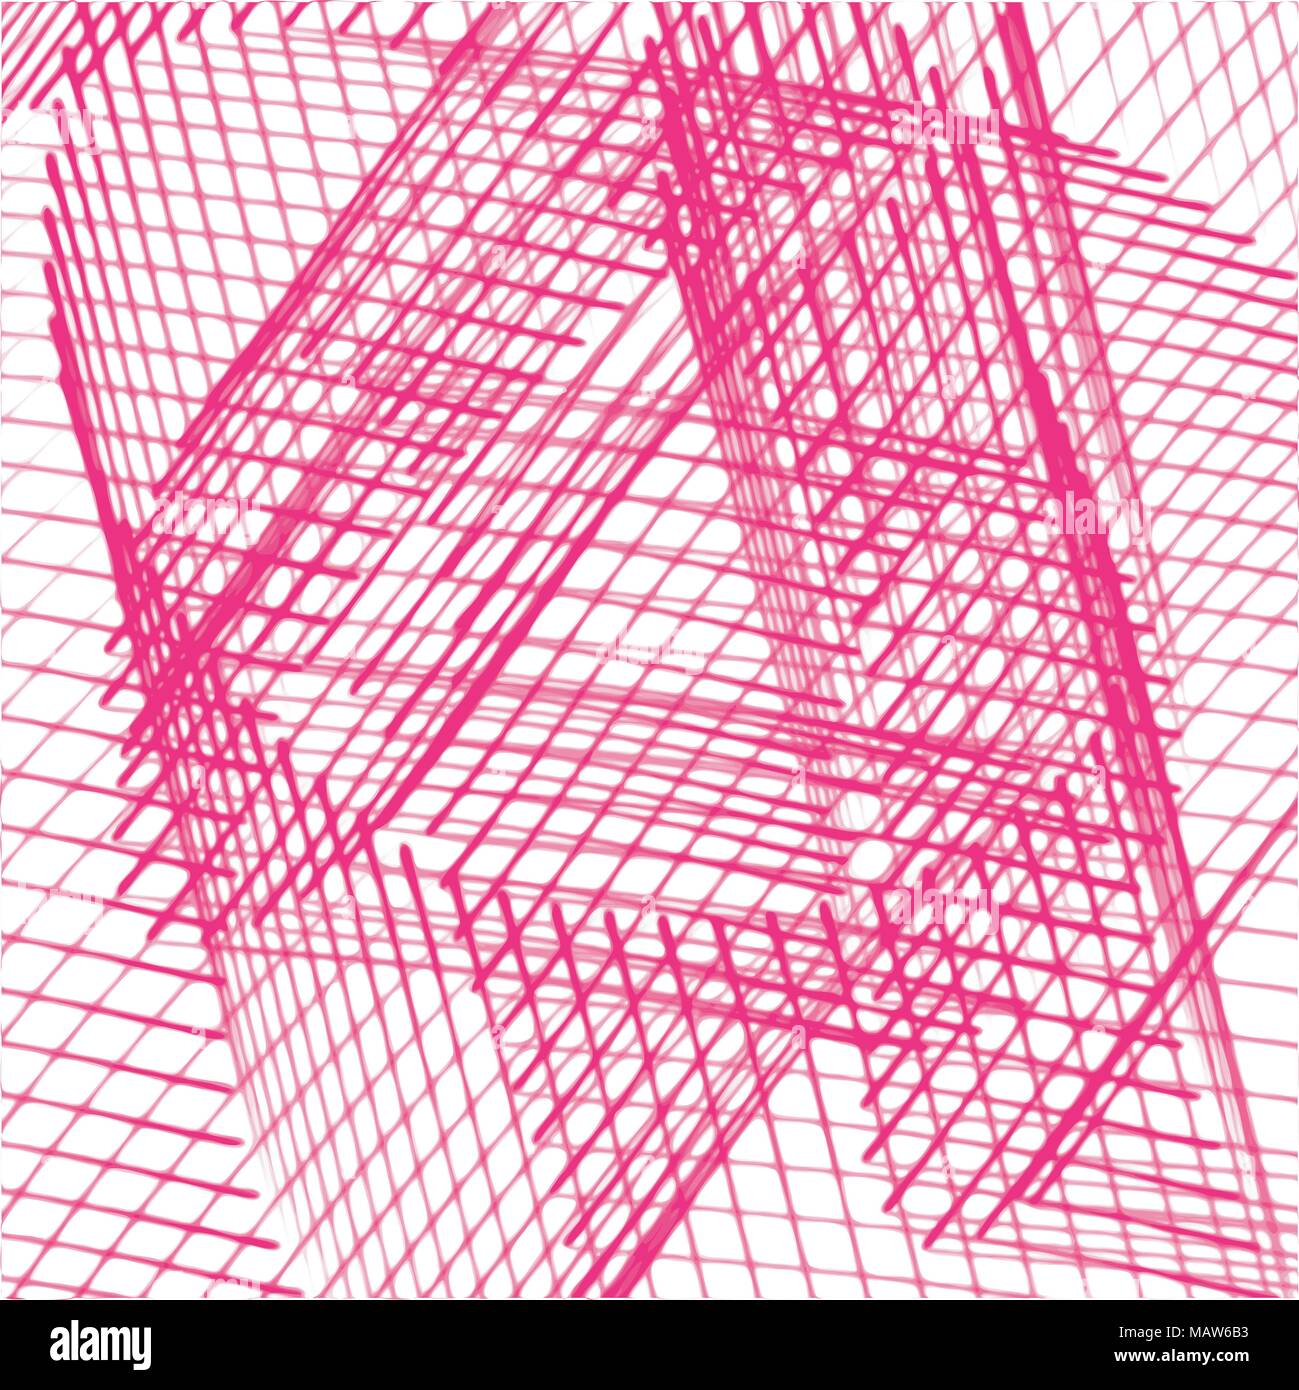 Rosa aquarell Dreieck grid Hintergrund Muster, Vector Illustration Stock Vektor